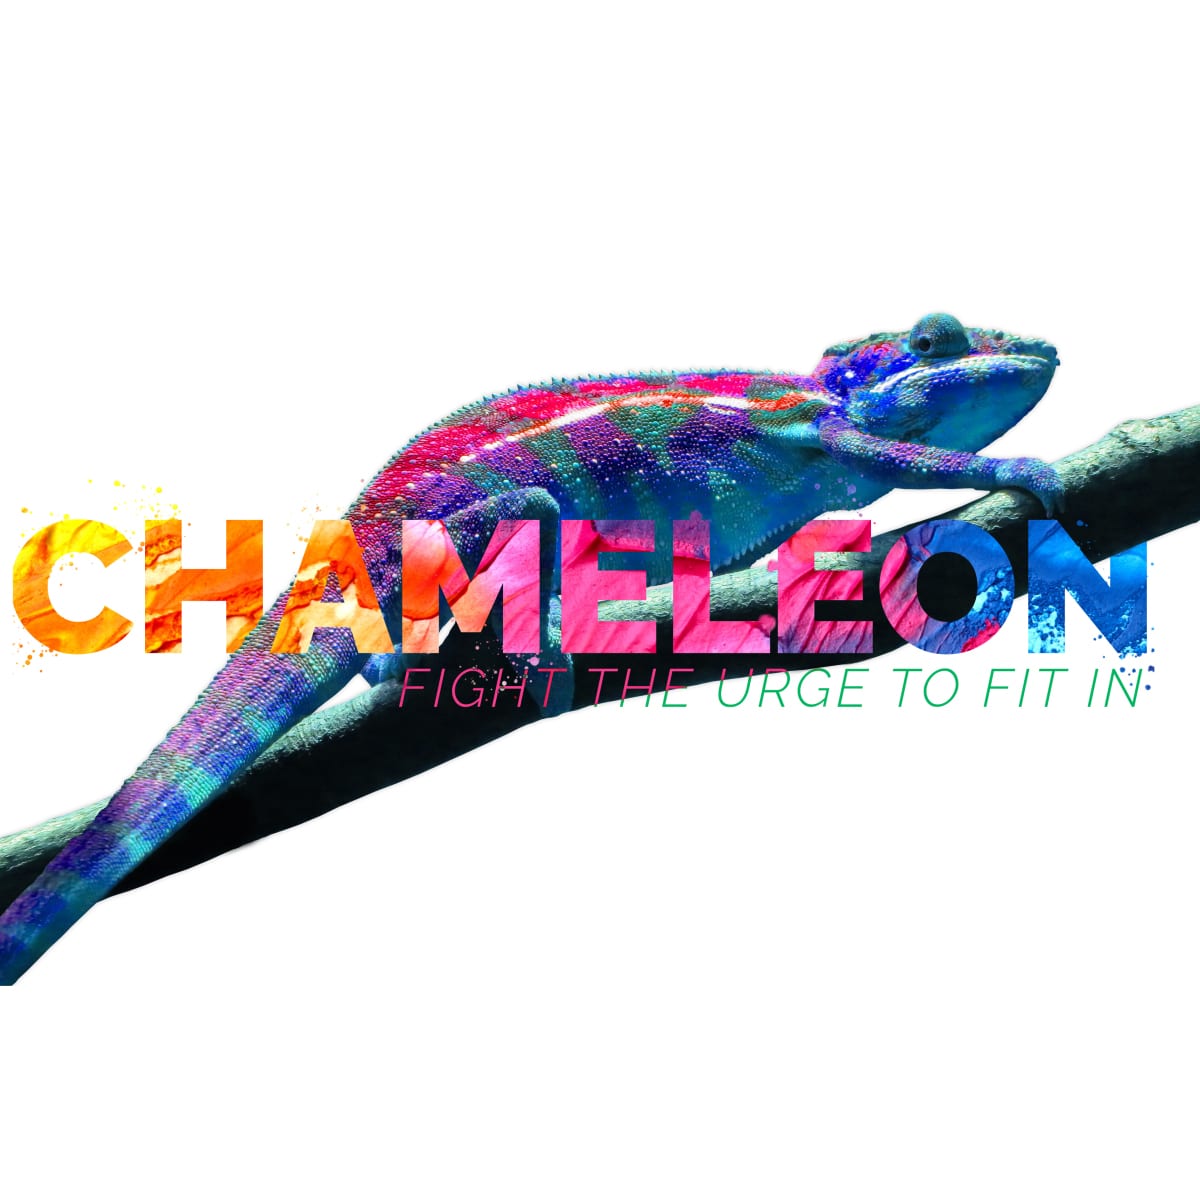 Chameleon : Full of ______